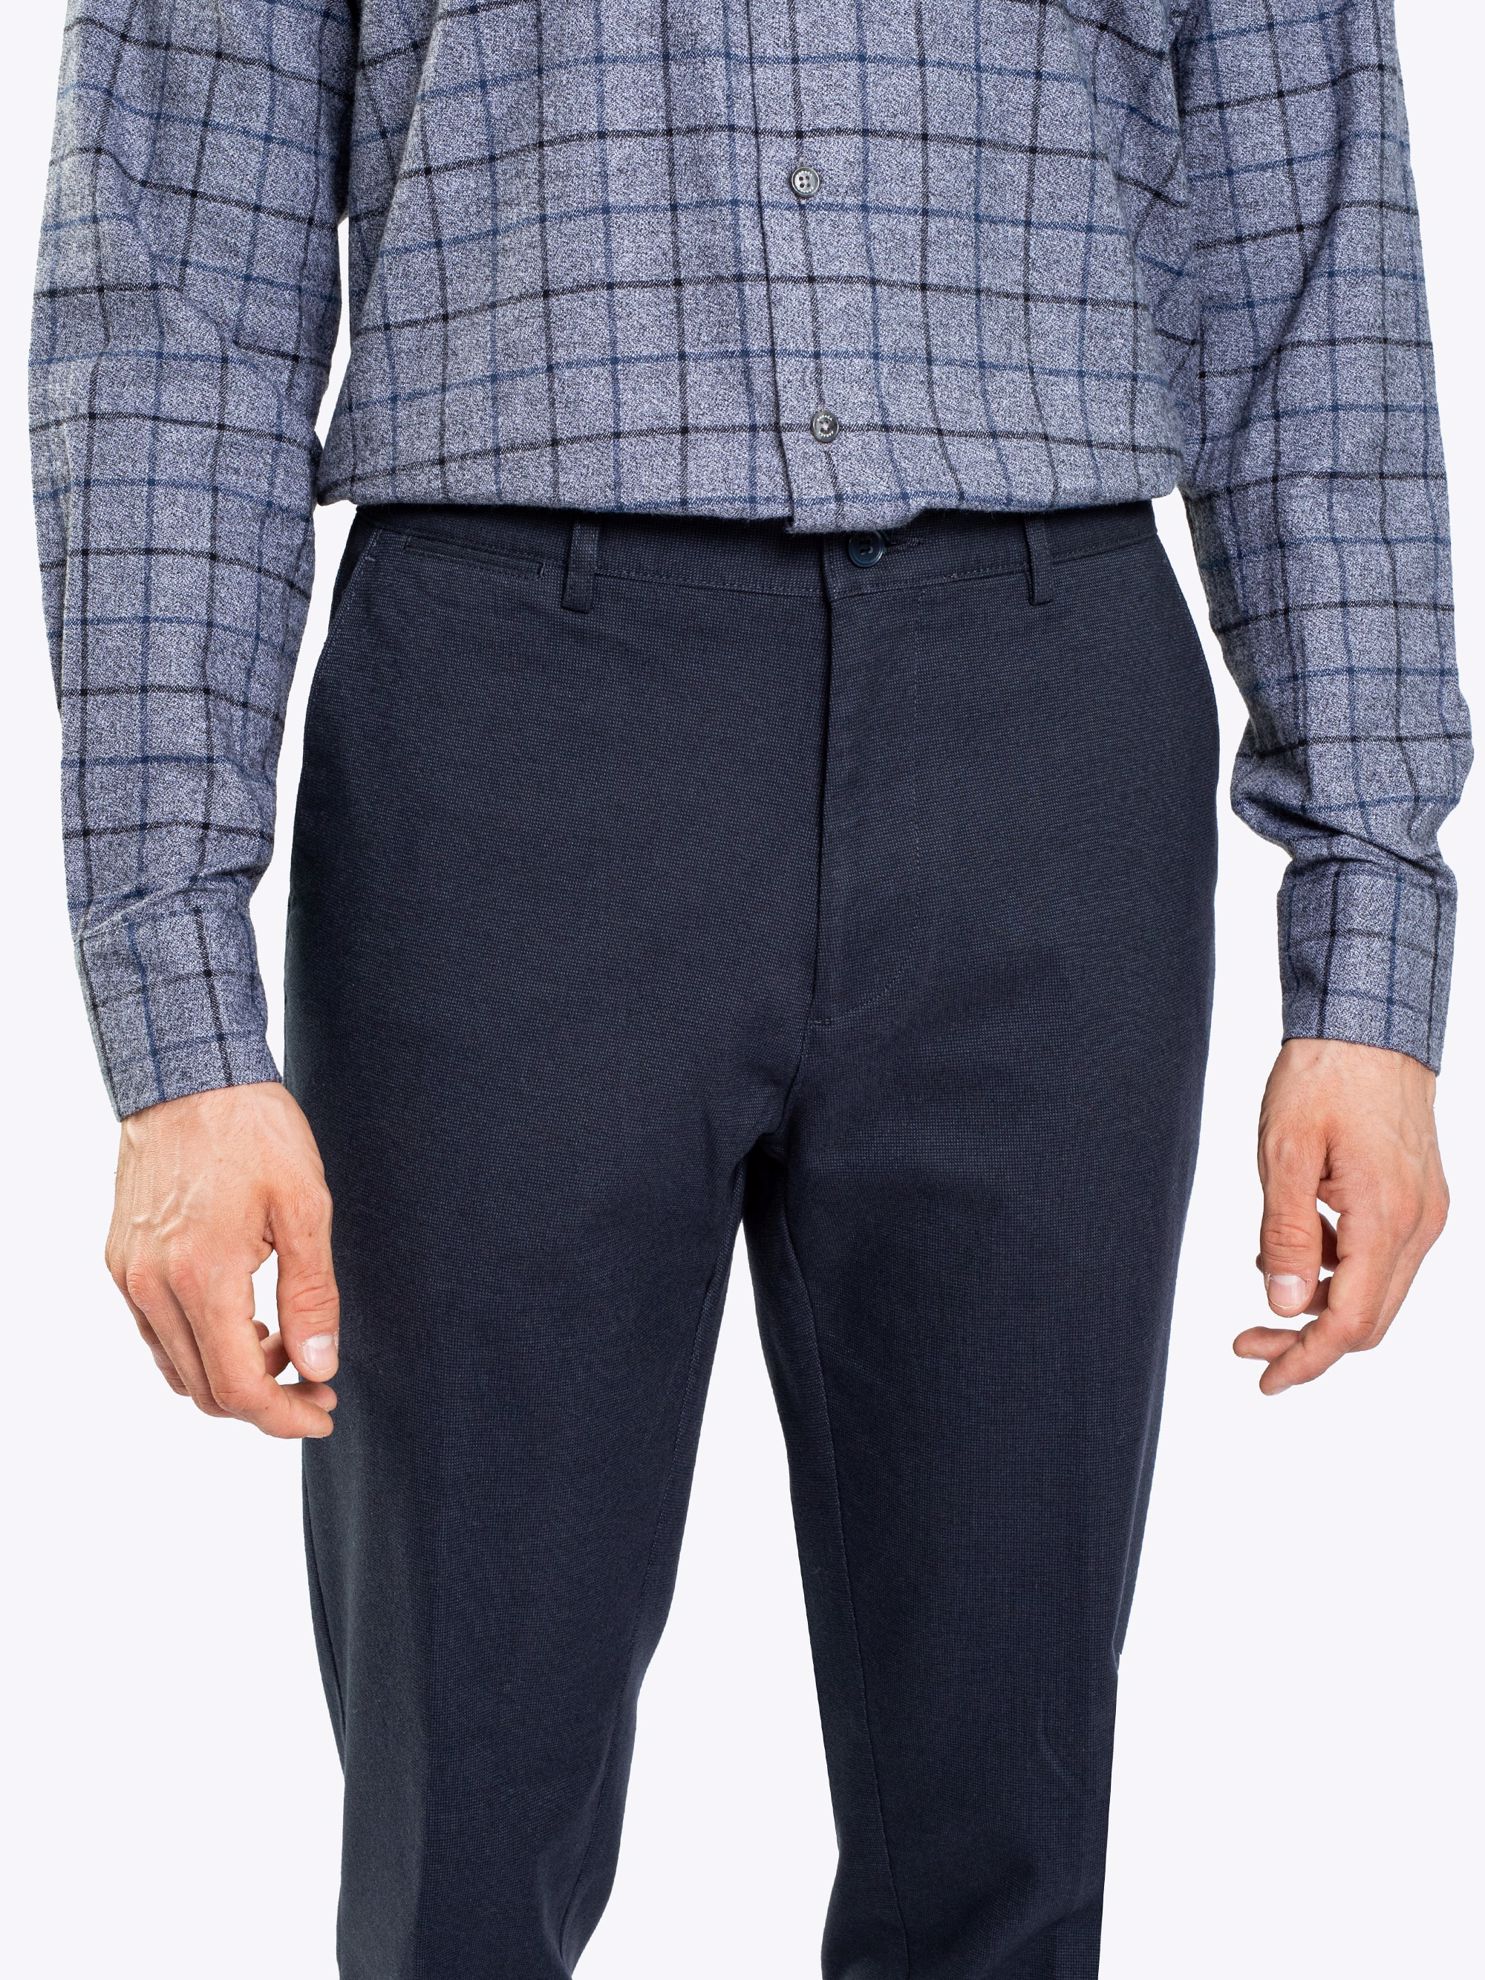 Karaca Erkek 4 Drop Pantolon-Lacivert. ürün görseli